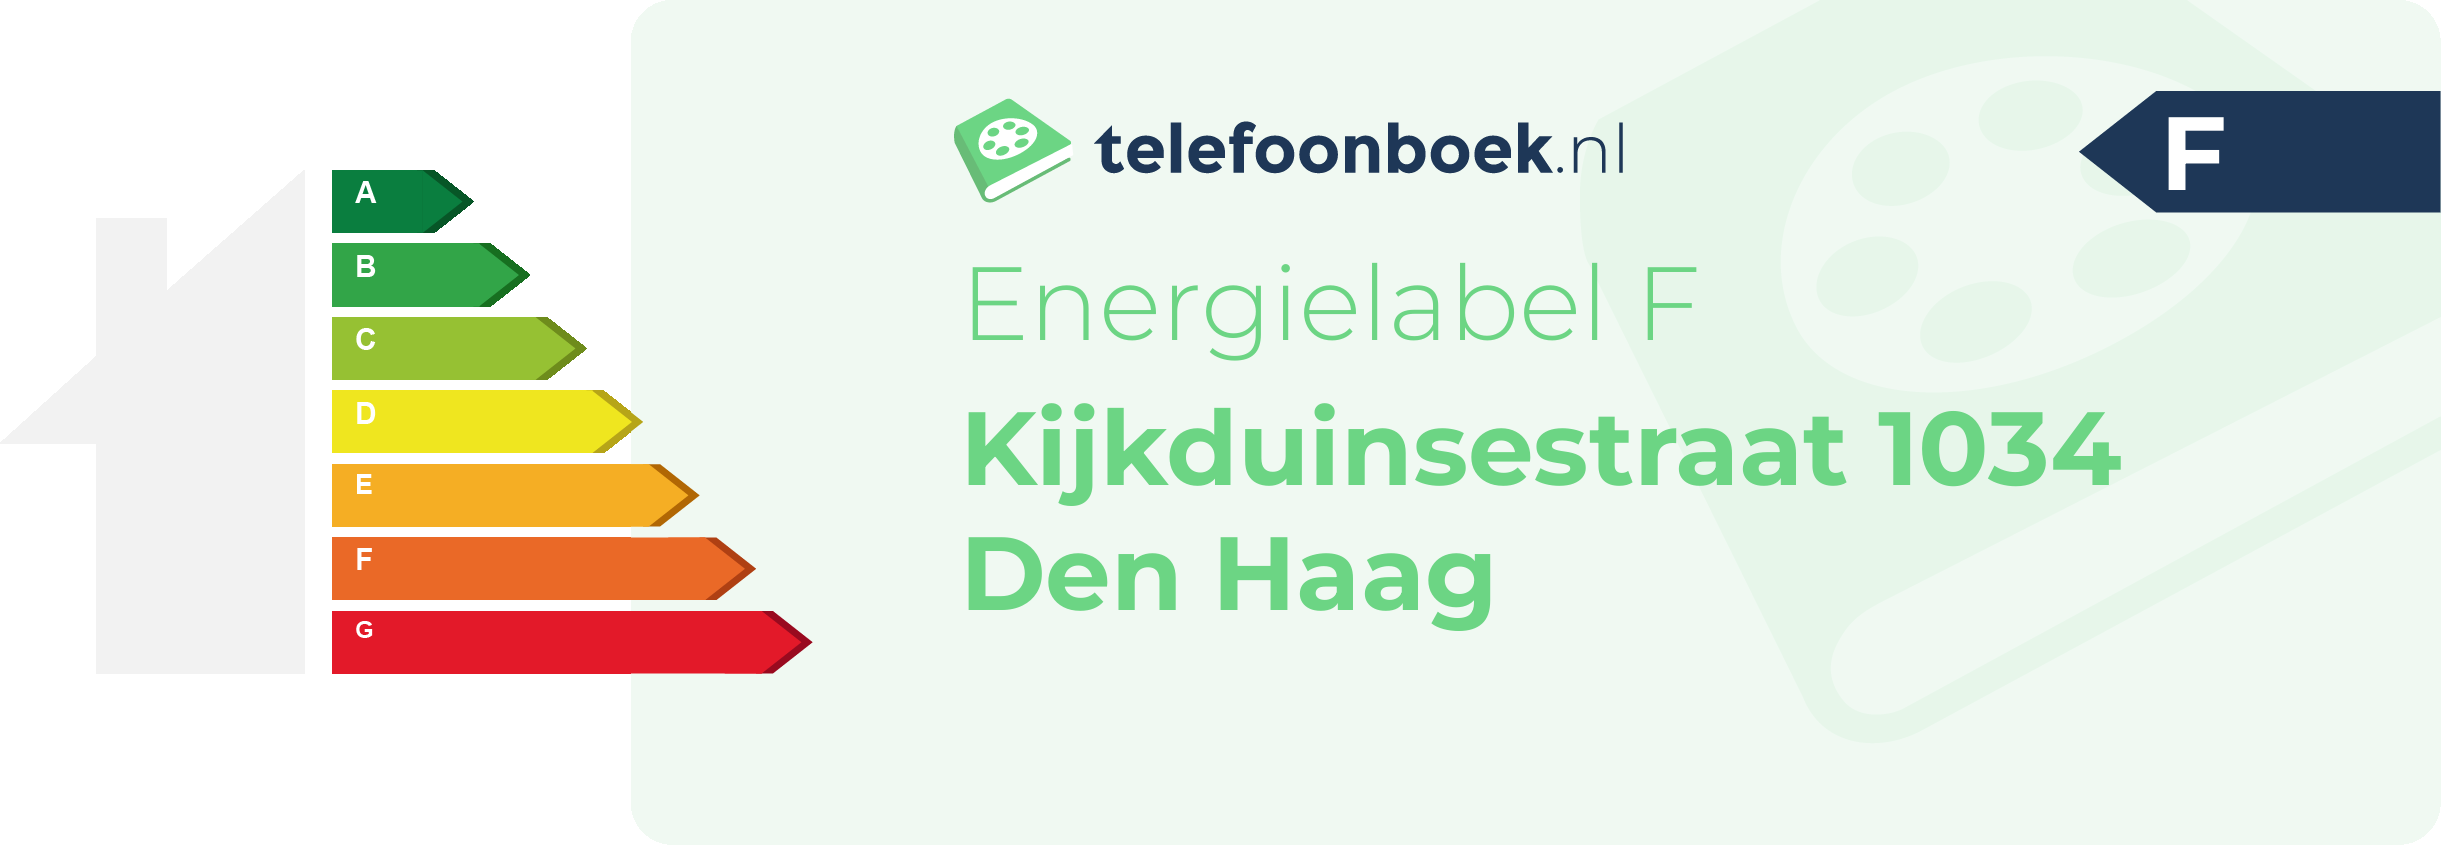 Energielabel Kijkduinsestraat 1034 Den Haag